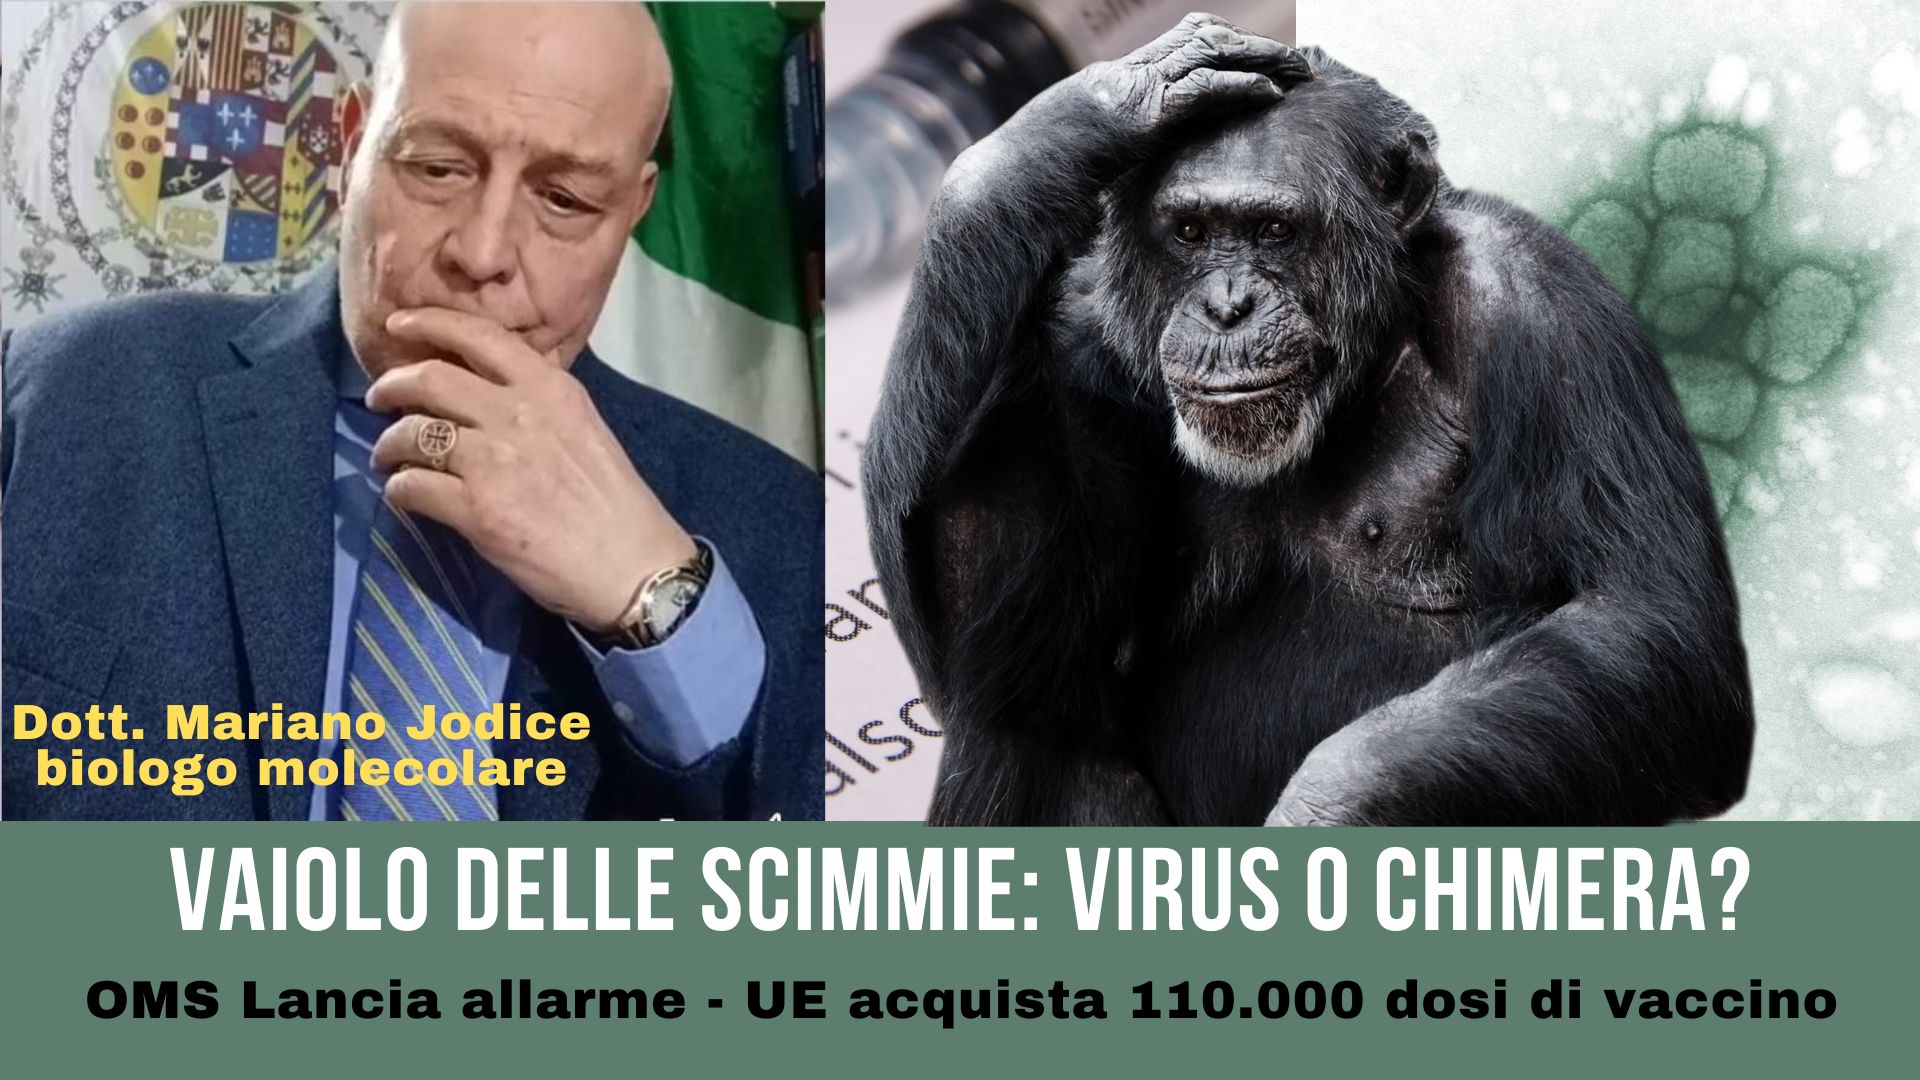 VAIOLO DELLE SCIMMIE VIRUS O CHIMERA